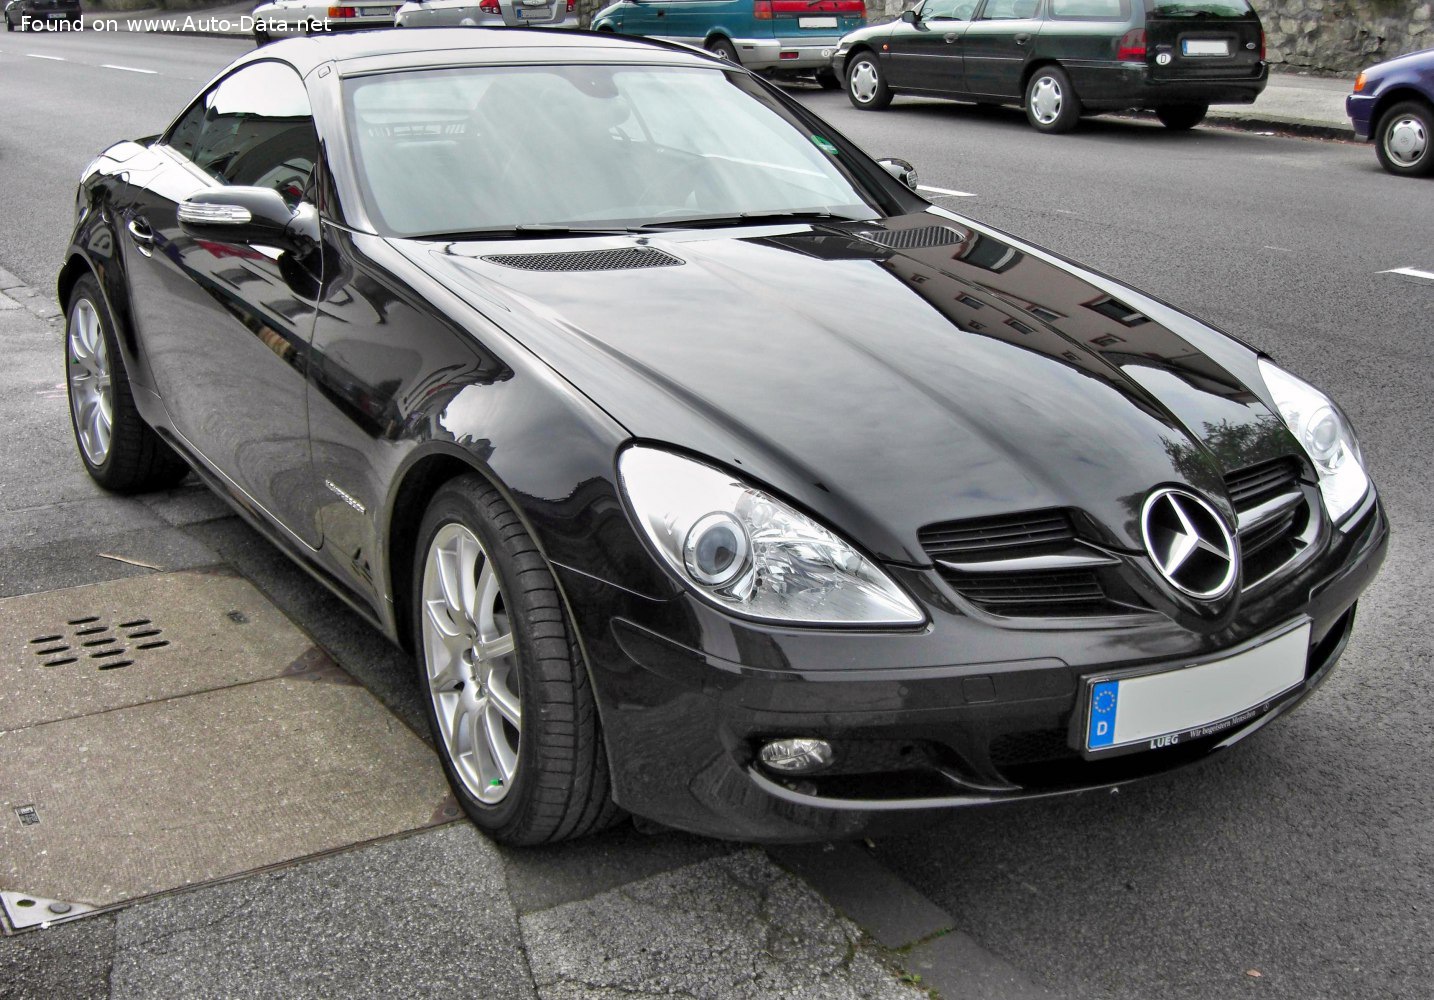 Mercedes Benz SLK (R171) 350 specs, dimensions